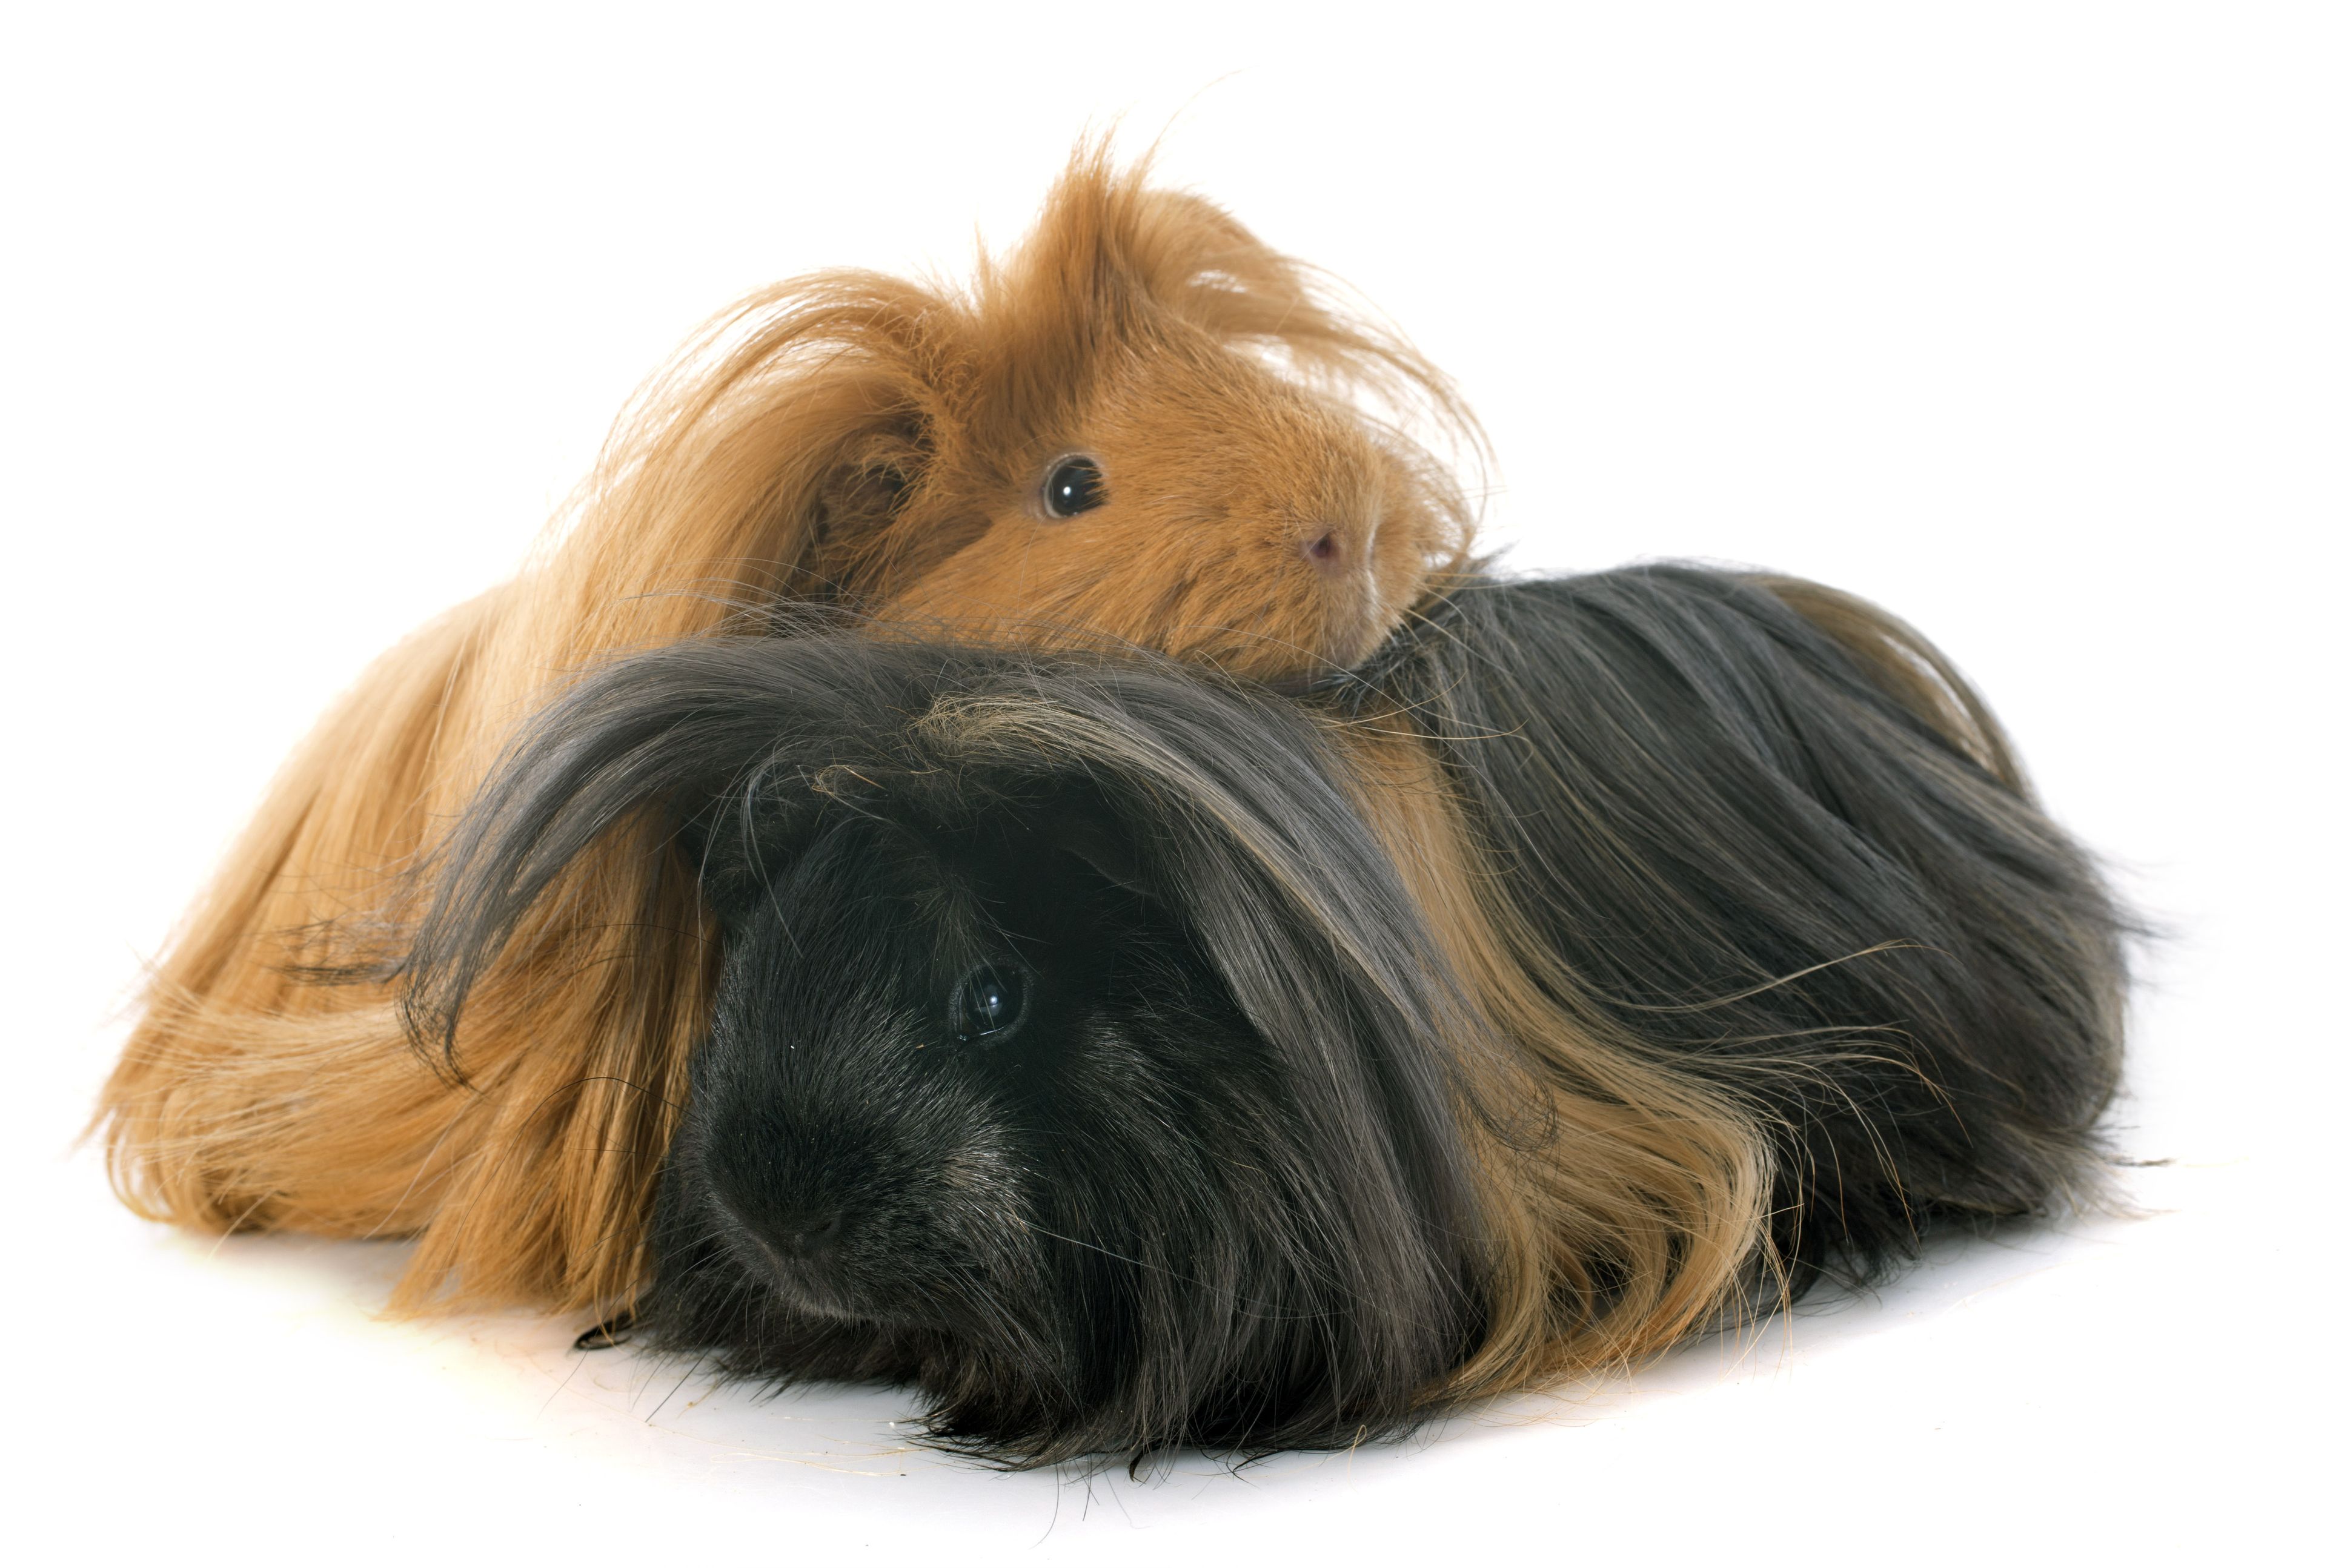 peruvian guinea pig breeders